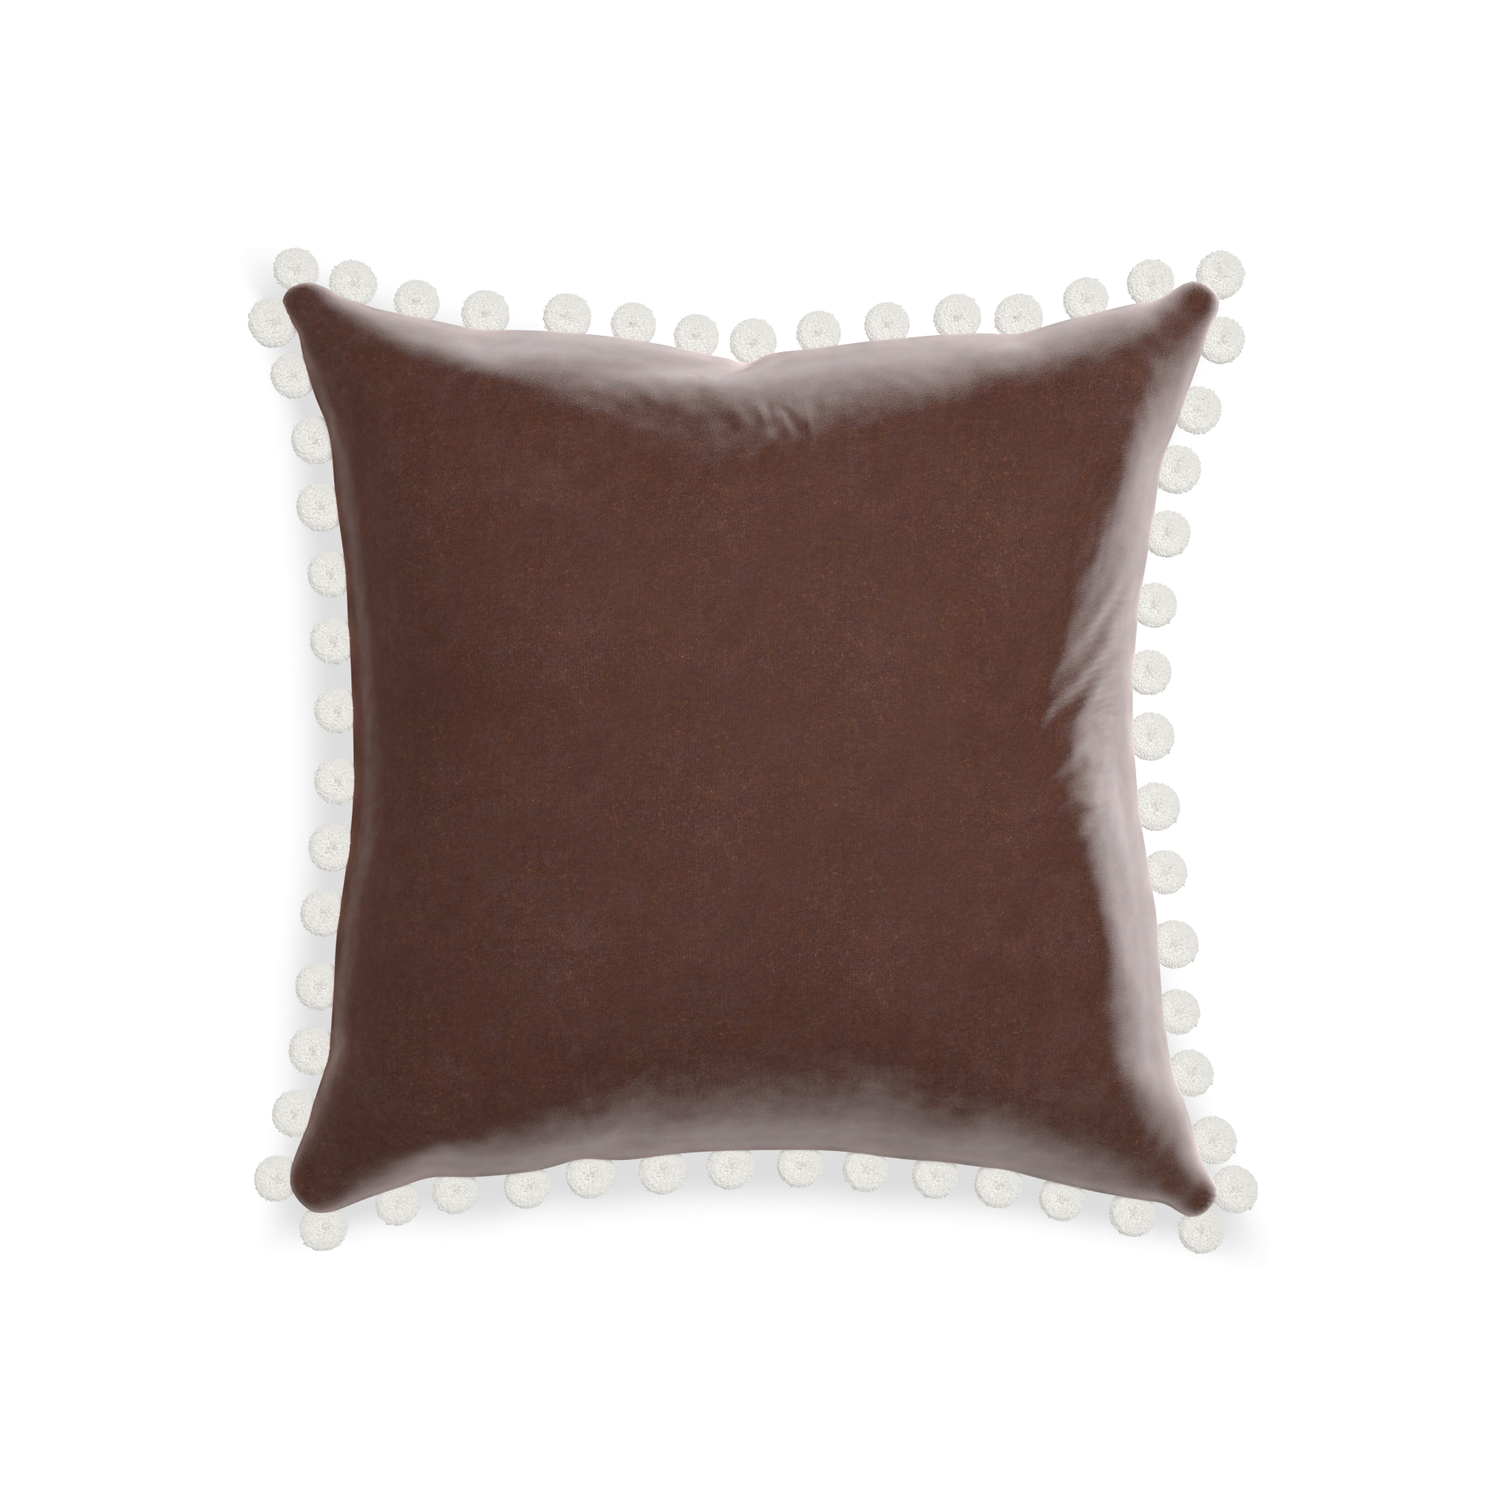 square brown velvet pillow with white pom poms